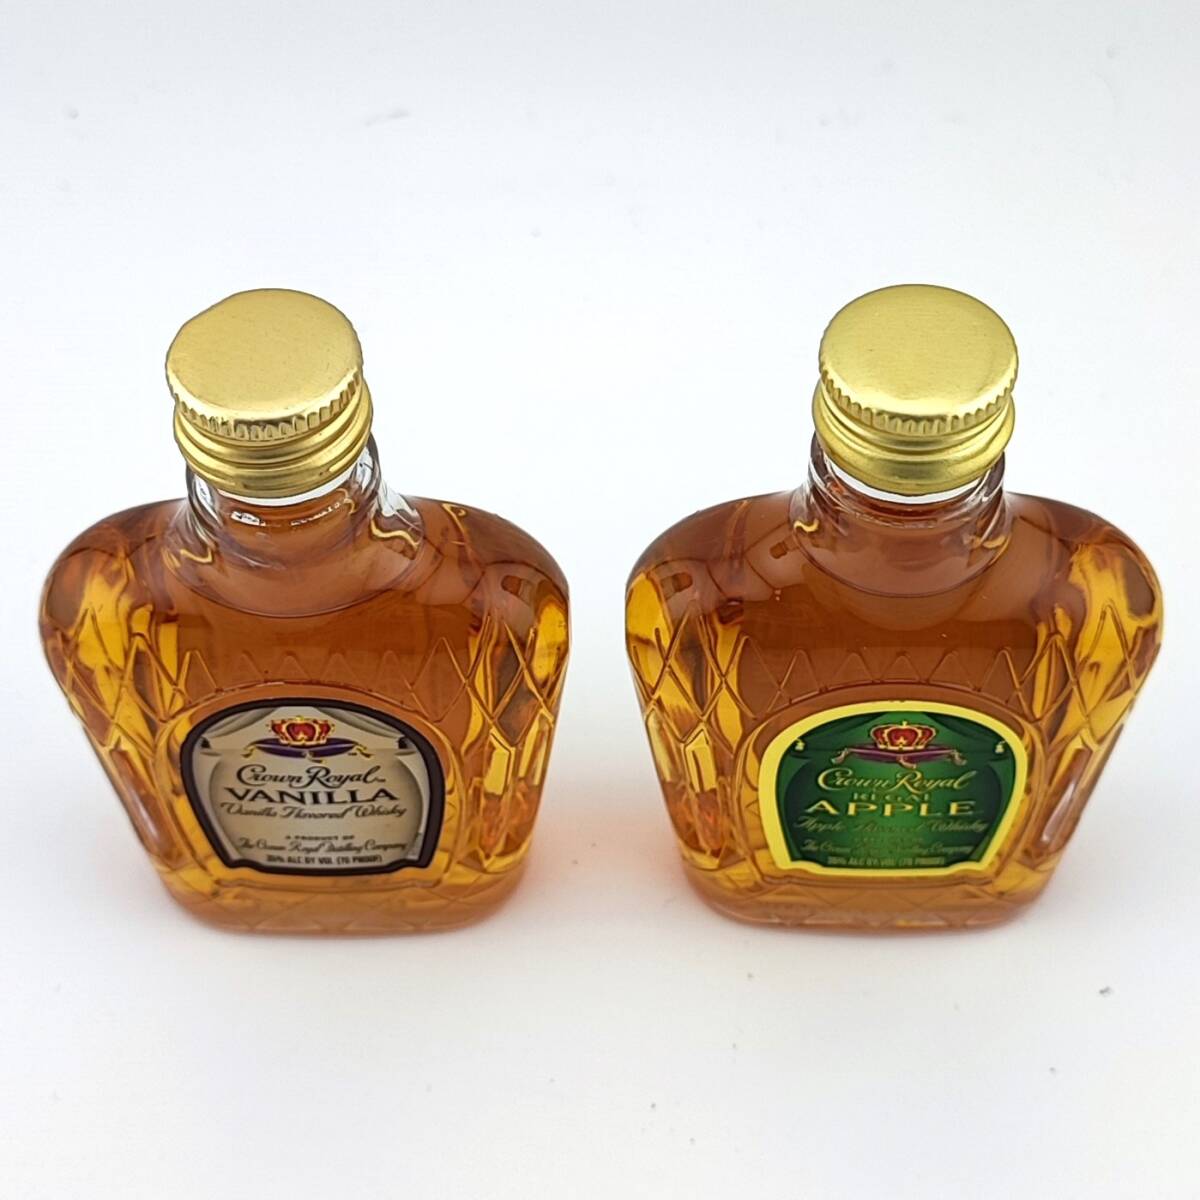 【全国送料無料】Crown Royal REGAL APPLE & VANILLA Flavored Whisky 各35度 各50ml【クラウンローヤル クラウン ローヤル ペットボトル】_画像5